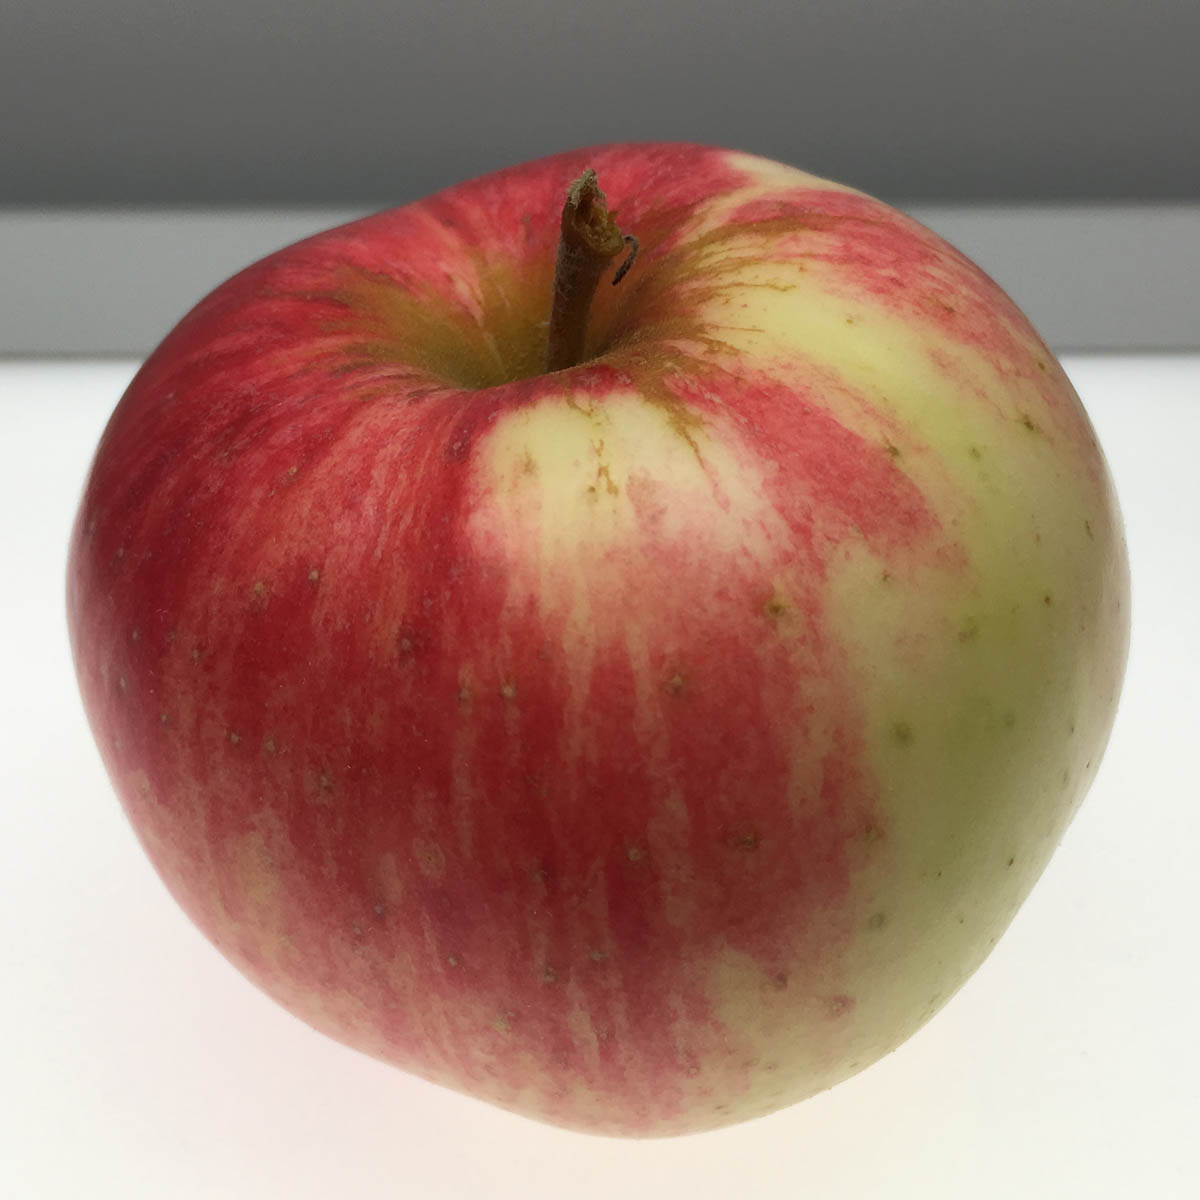 Duchess of Oldenberg apple